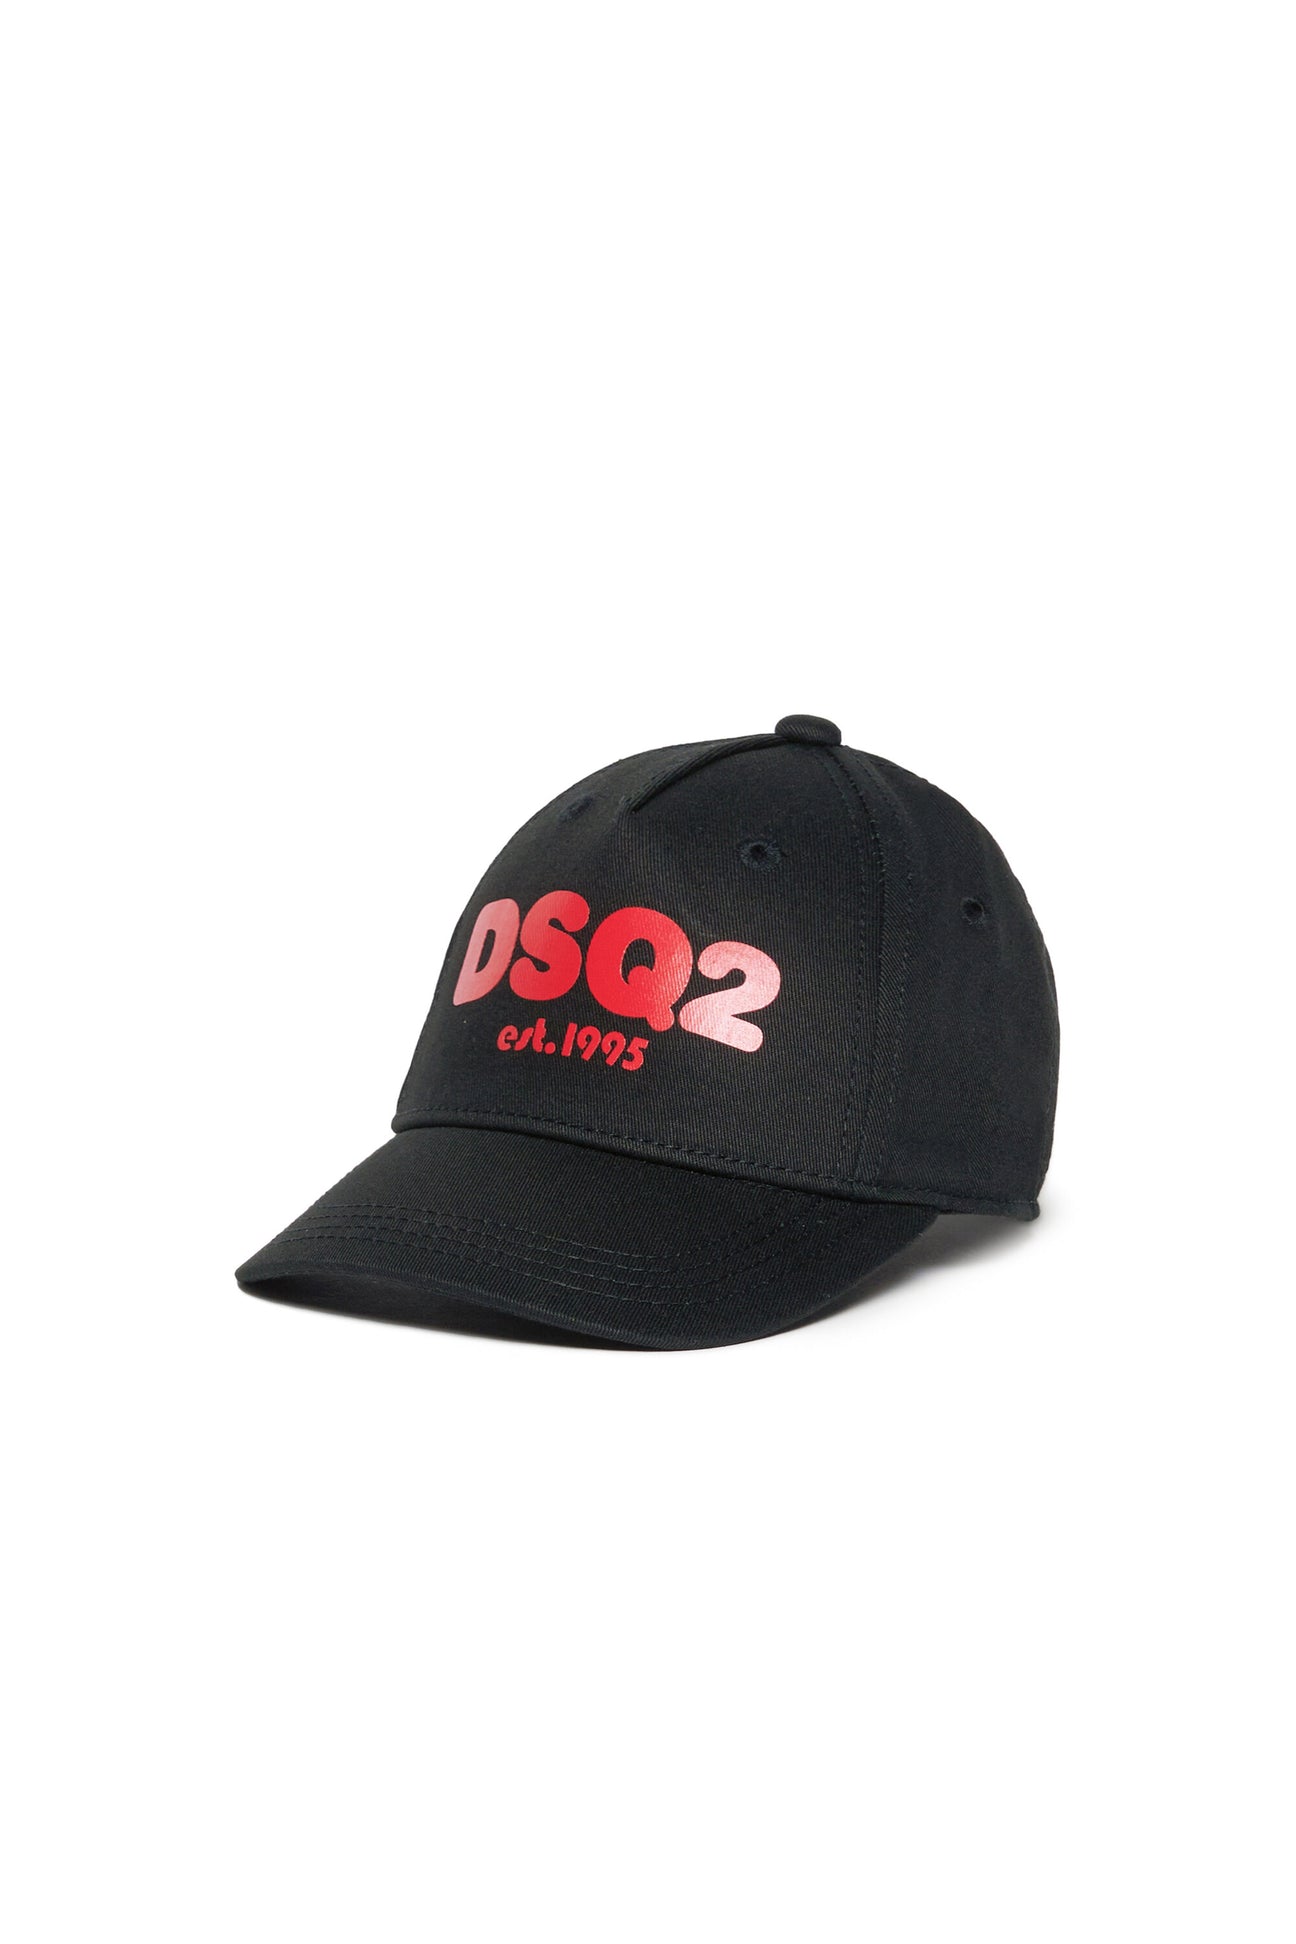 Branded baseball cap DSQ2 est.1995 